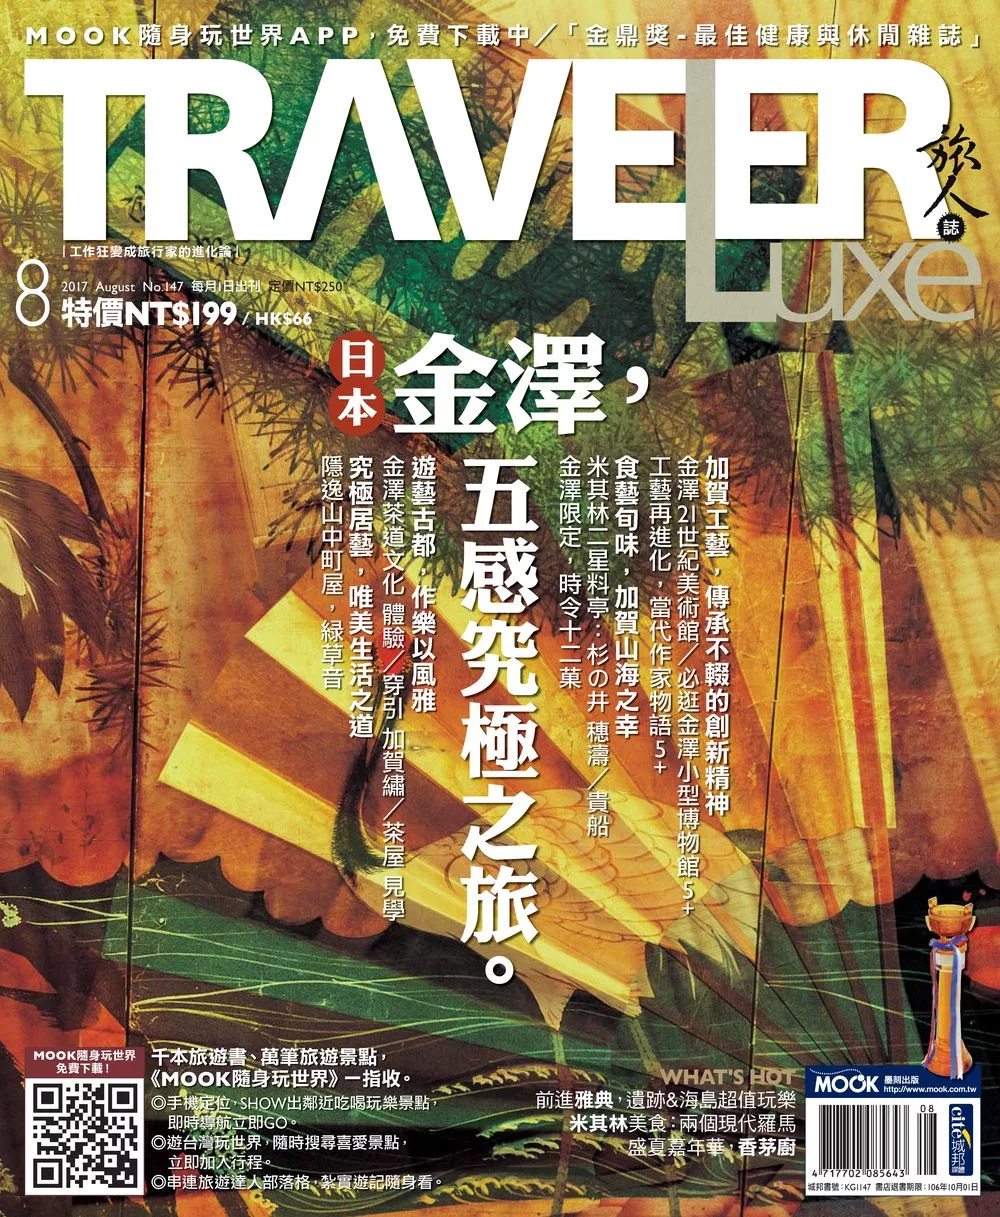 TRAVELER LUXE 旅人誌 08月號/2017第147期 (電子雜誌)